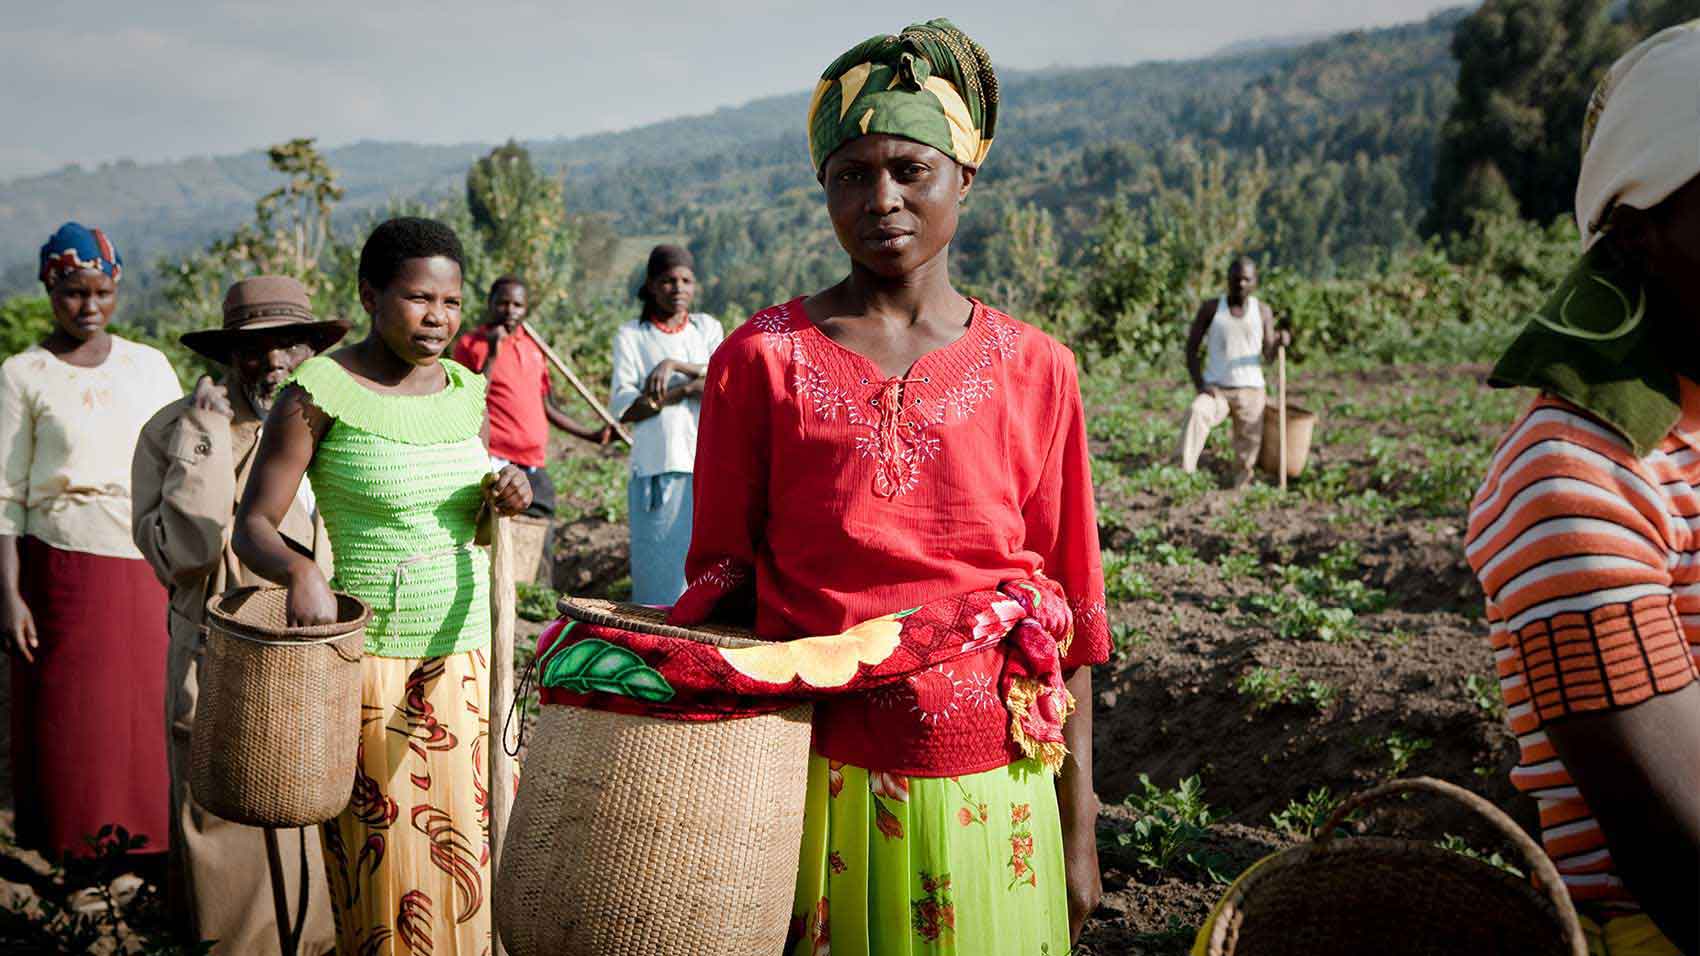 SC Johnson Ruanda’daki kadın girişimcileri ve sürdürülebilir çiftçiliği destekliyor